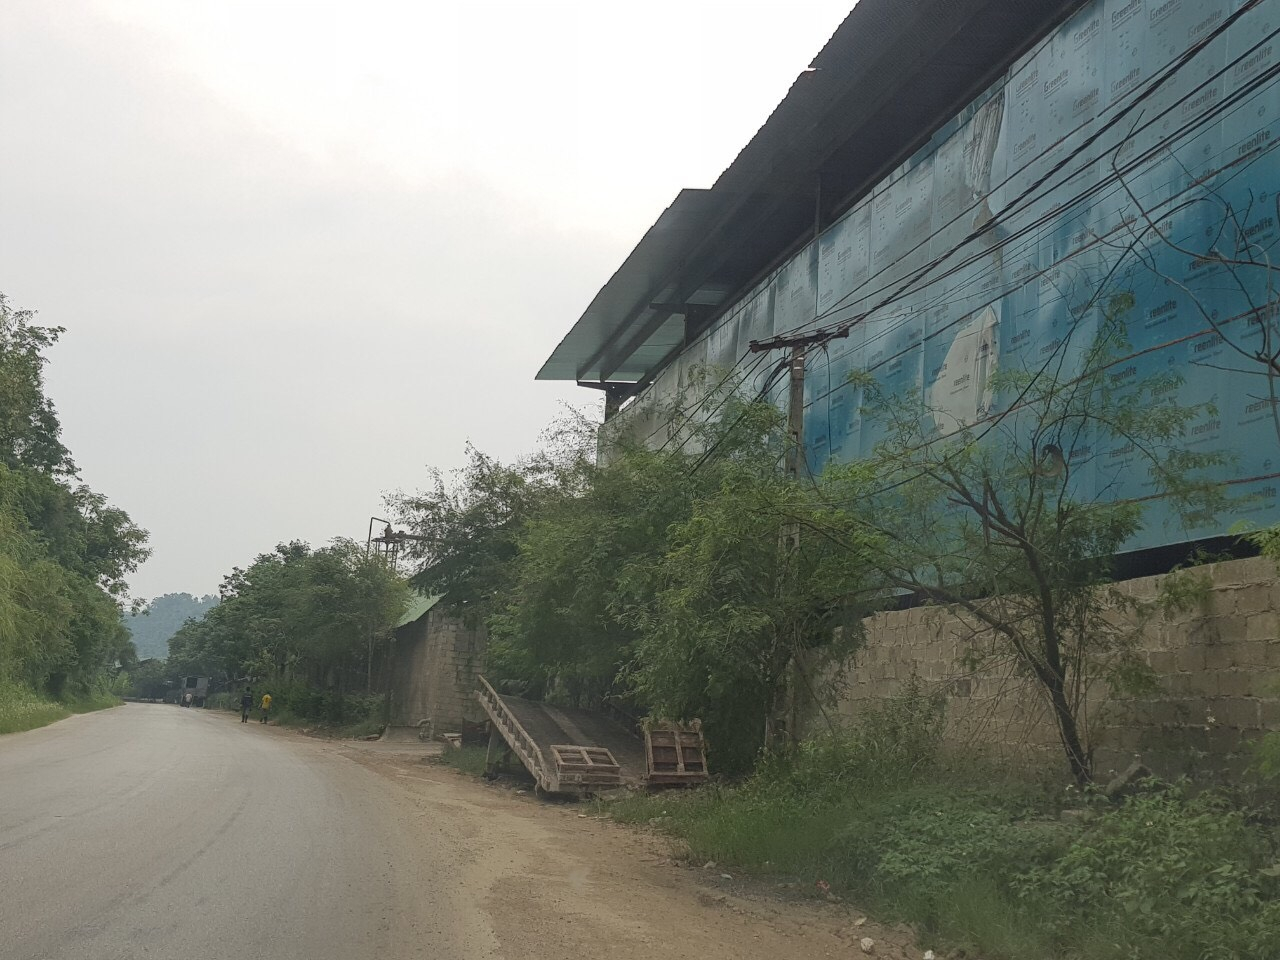 Lạng Sơn: Thanh tra toàn diện doanh nghiệp sản xuất da Nguyên Hồng bức tử môi trường nghiêm trọng